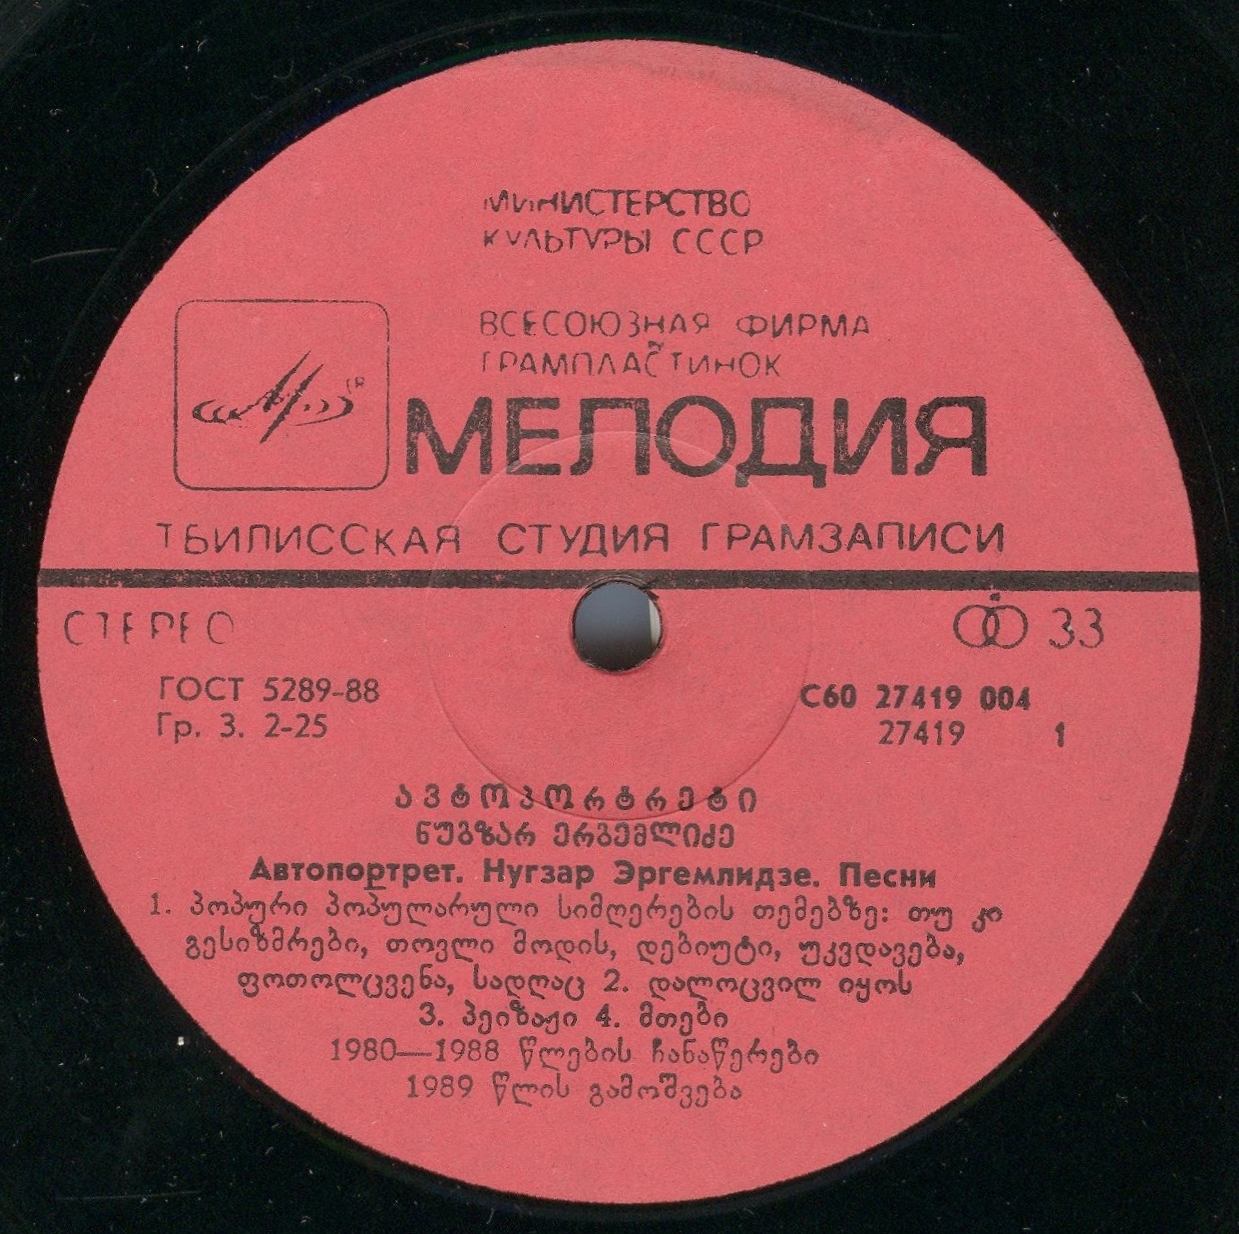 Н. ЭРГЕМЛИДЗЕ (1955): «Автопортрет», песни (на грузинском яз.).